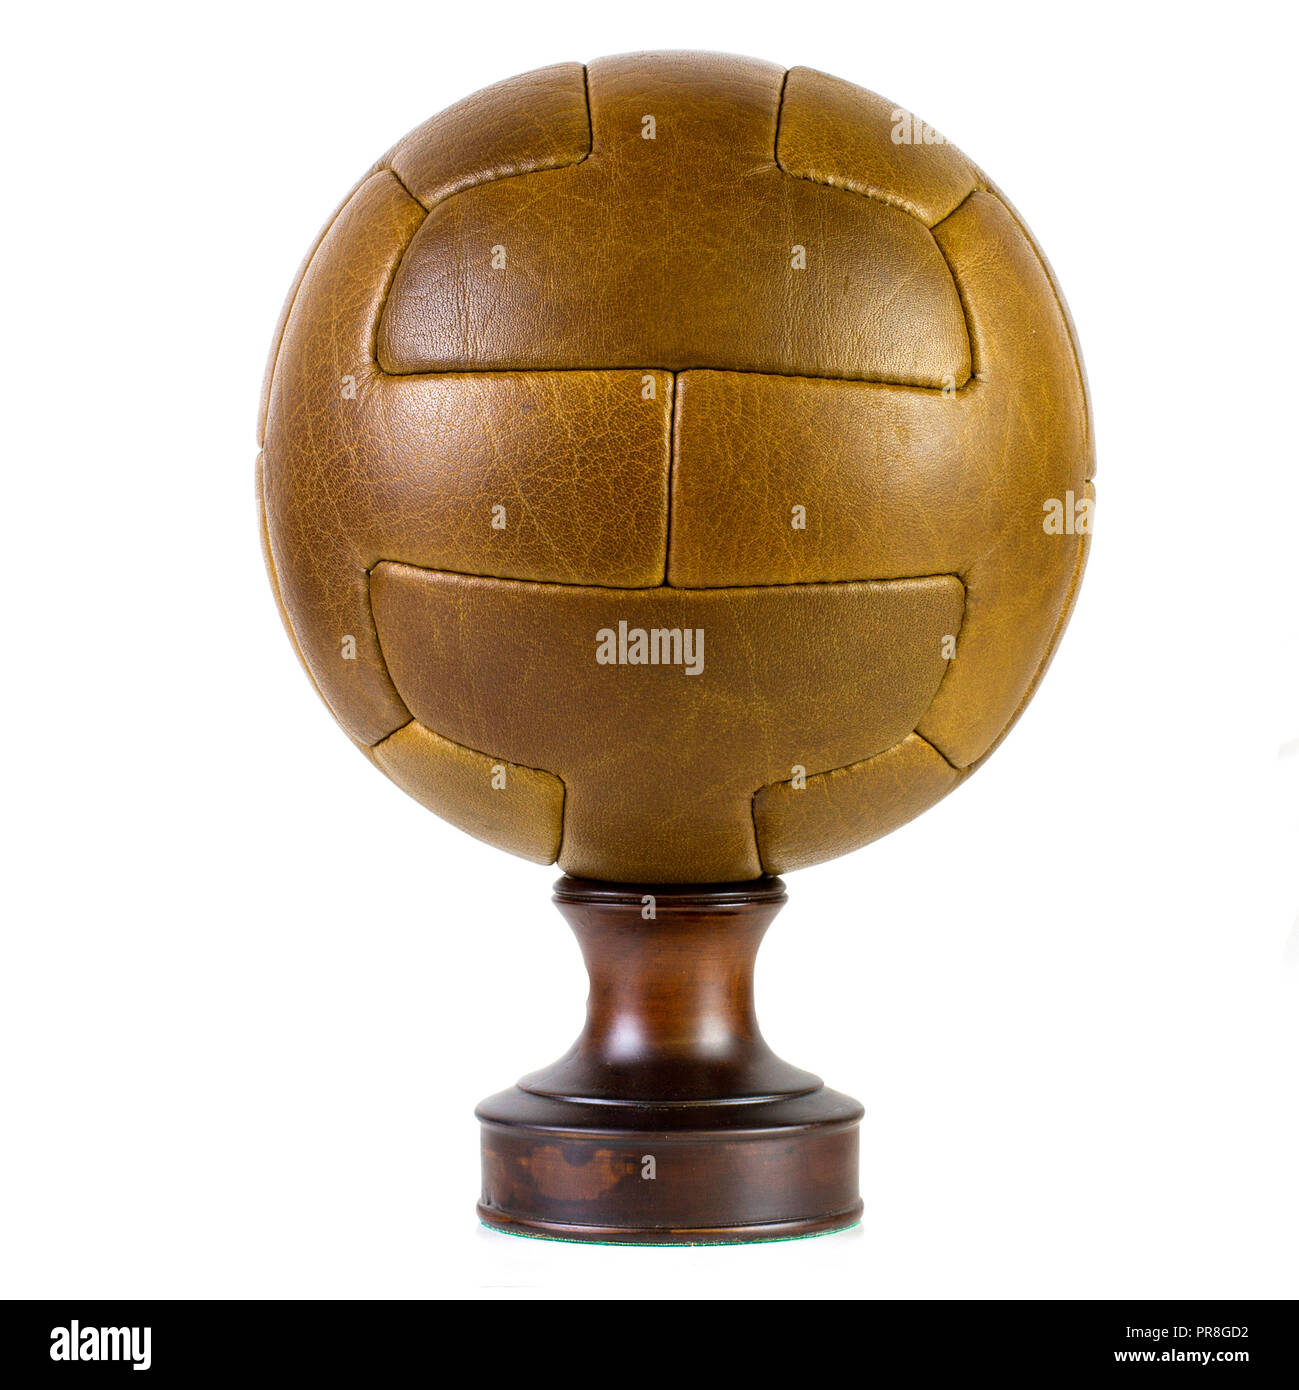 Pelle vintage pannello T soccer ball sfera di calcio Foto Stock